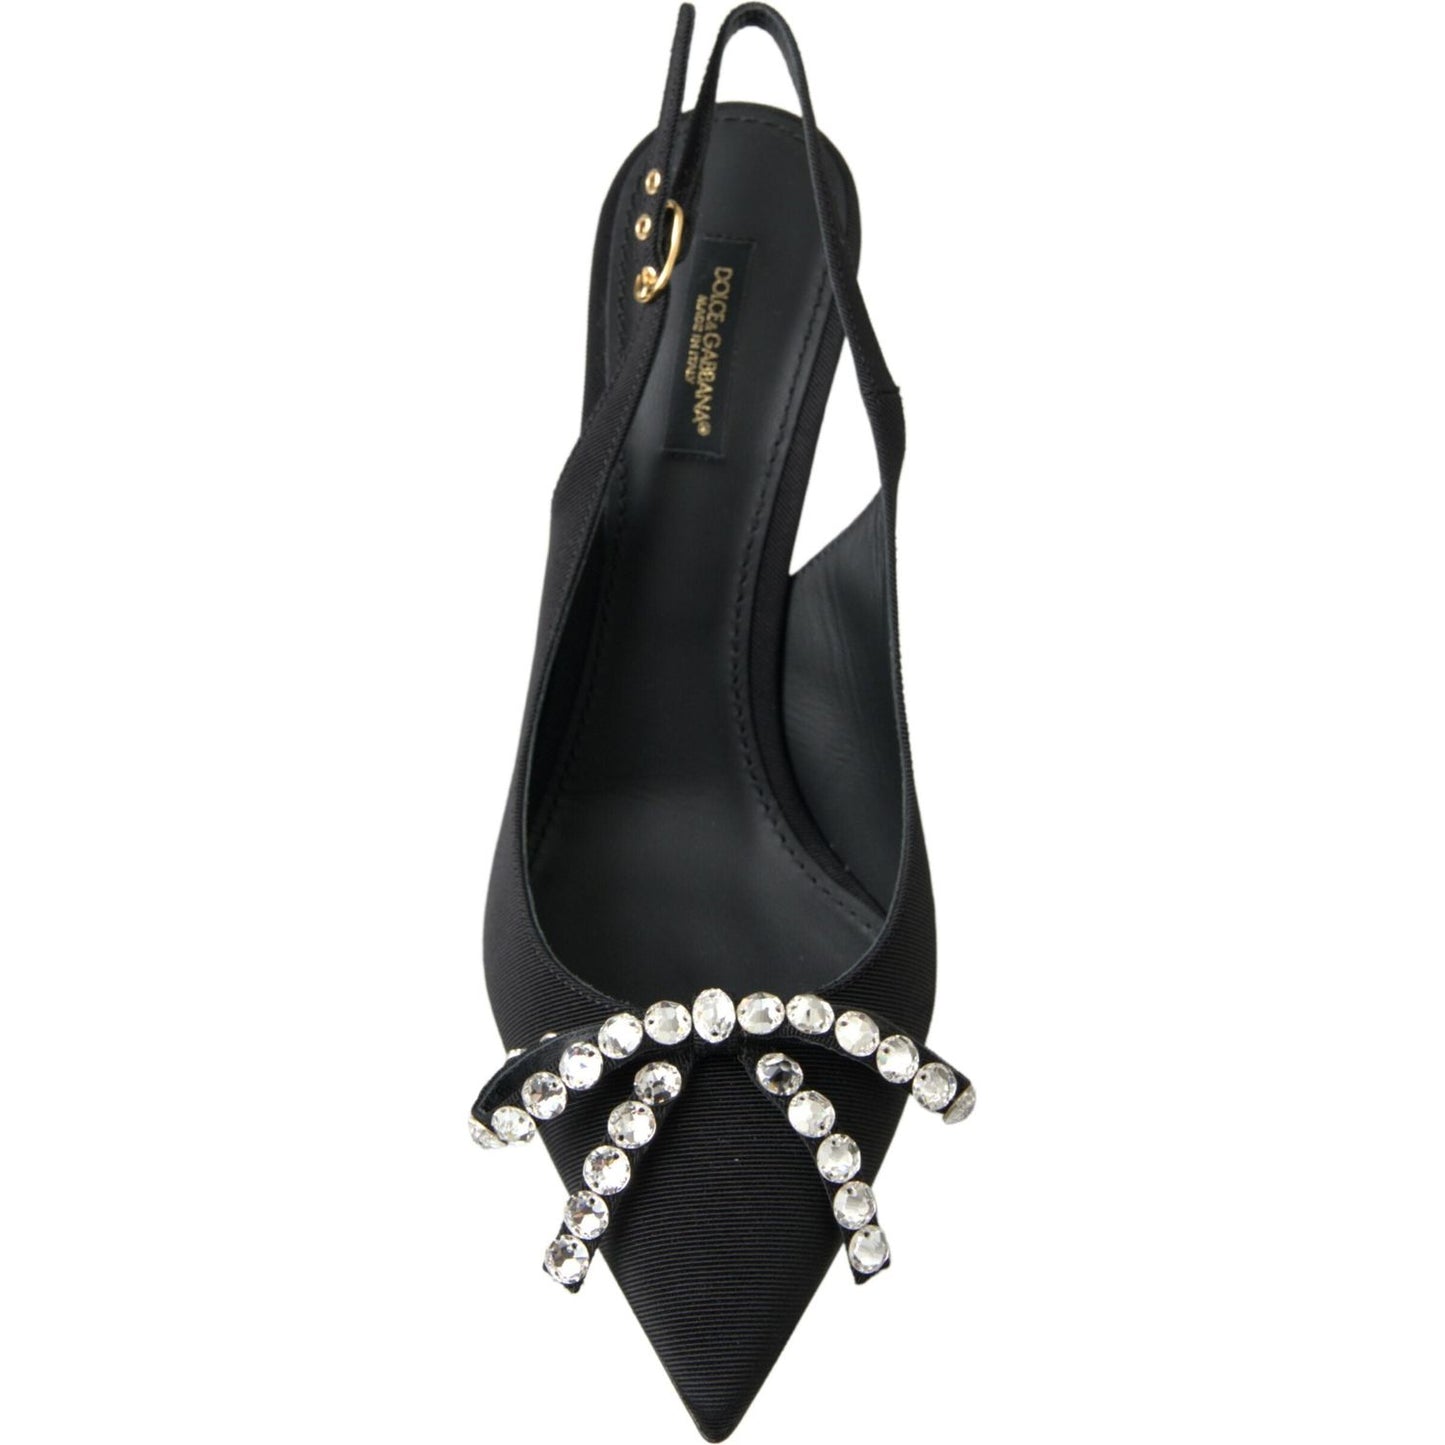 Dolce & Gabbana Embellished Black Slingback Heels Pumps black-crystal-embellished-slingback-heel-shoes